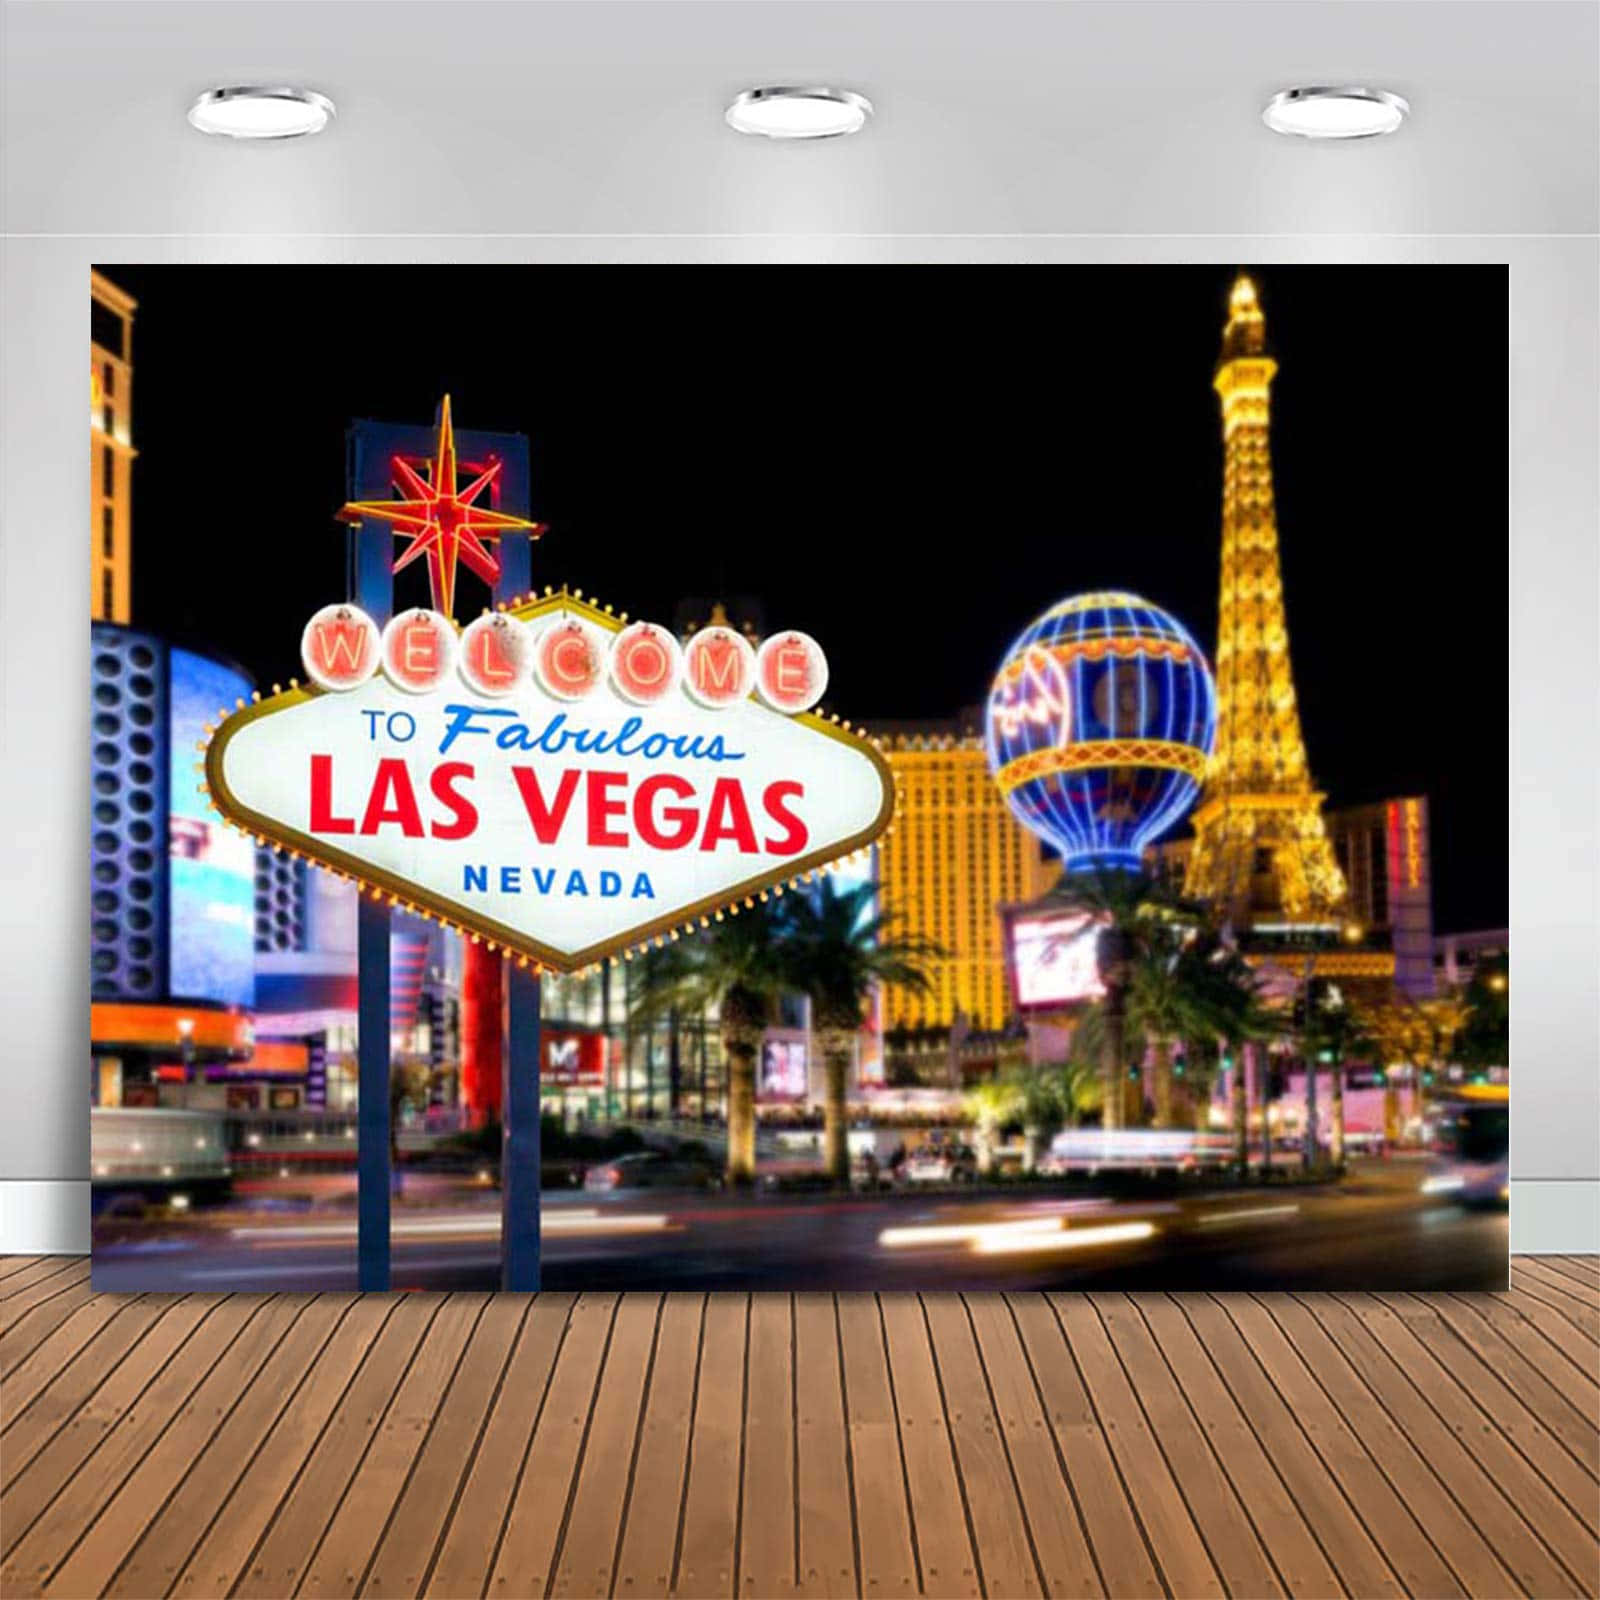 Väggdukmed Las Vegas-bakgrundsbild.